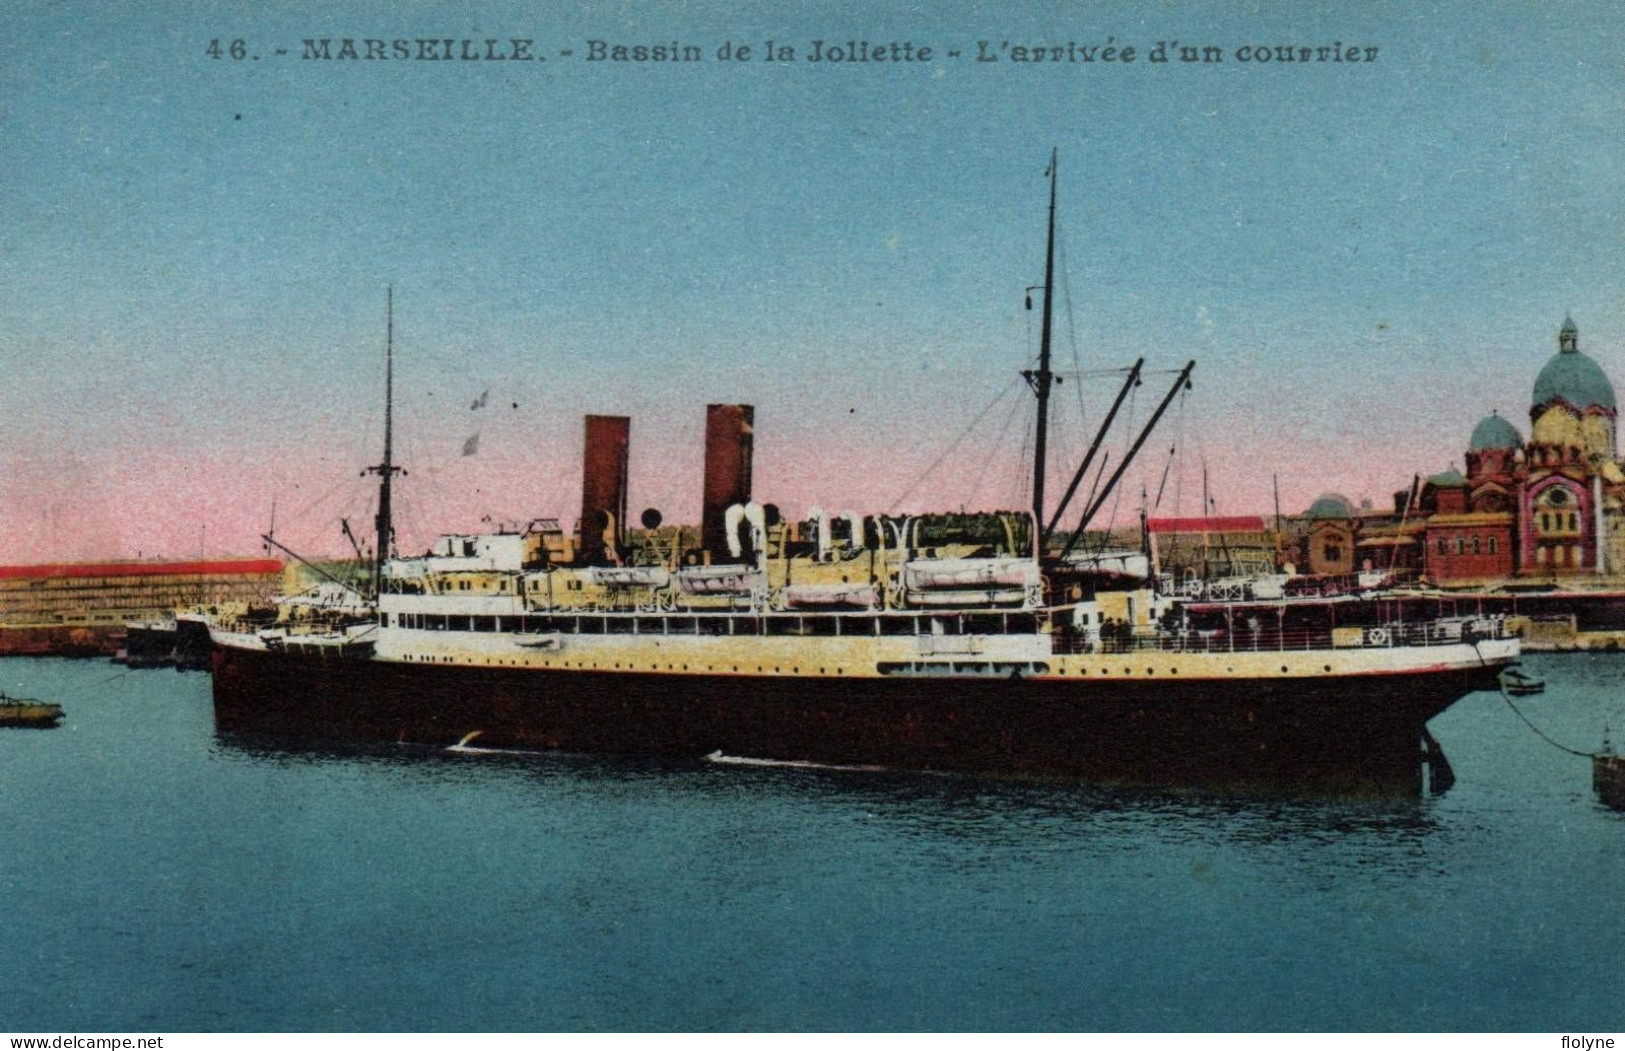 Marseille - Bassin De La Joliette - L'arrivée D'un Courrier - Bateau - Joliette, Zona Portuaria